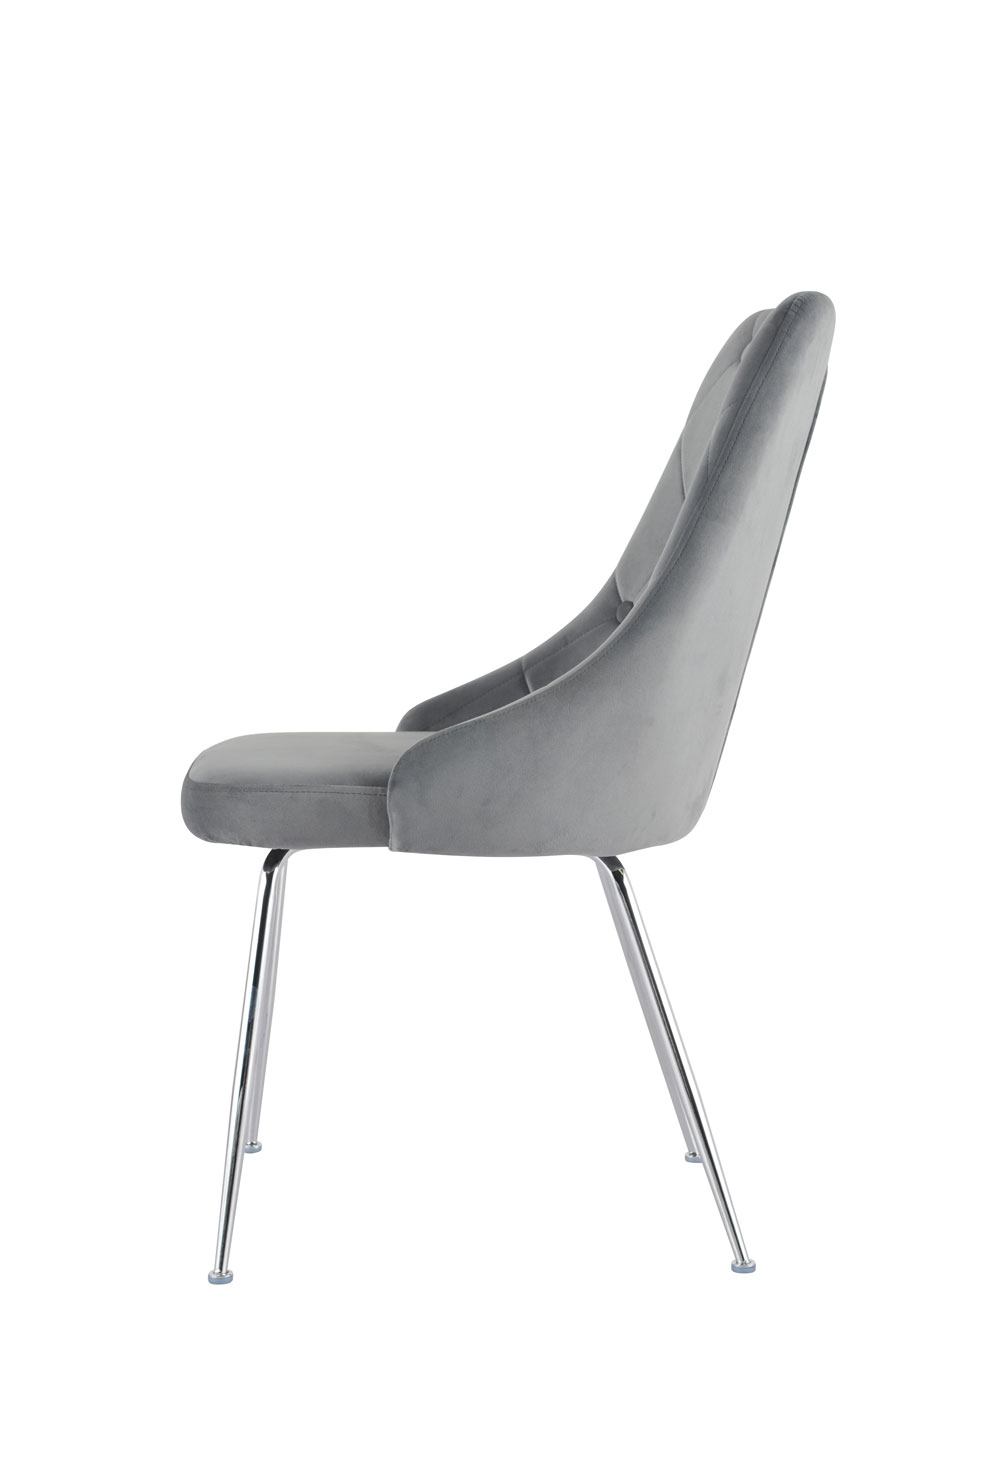 Mavis Side Chair - Grey/Chrome